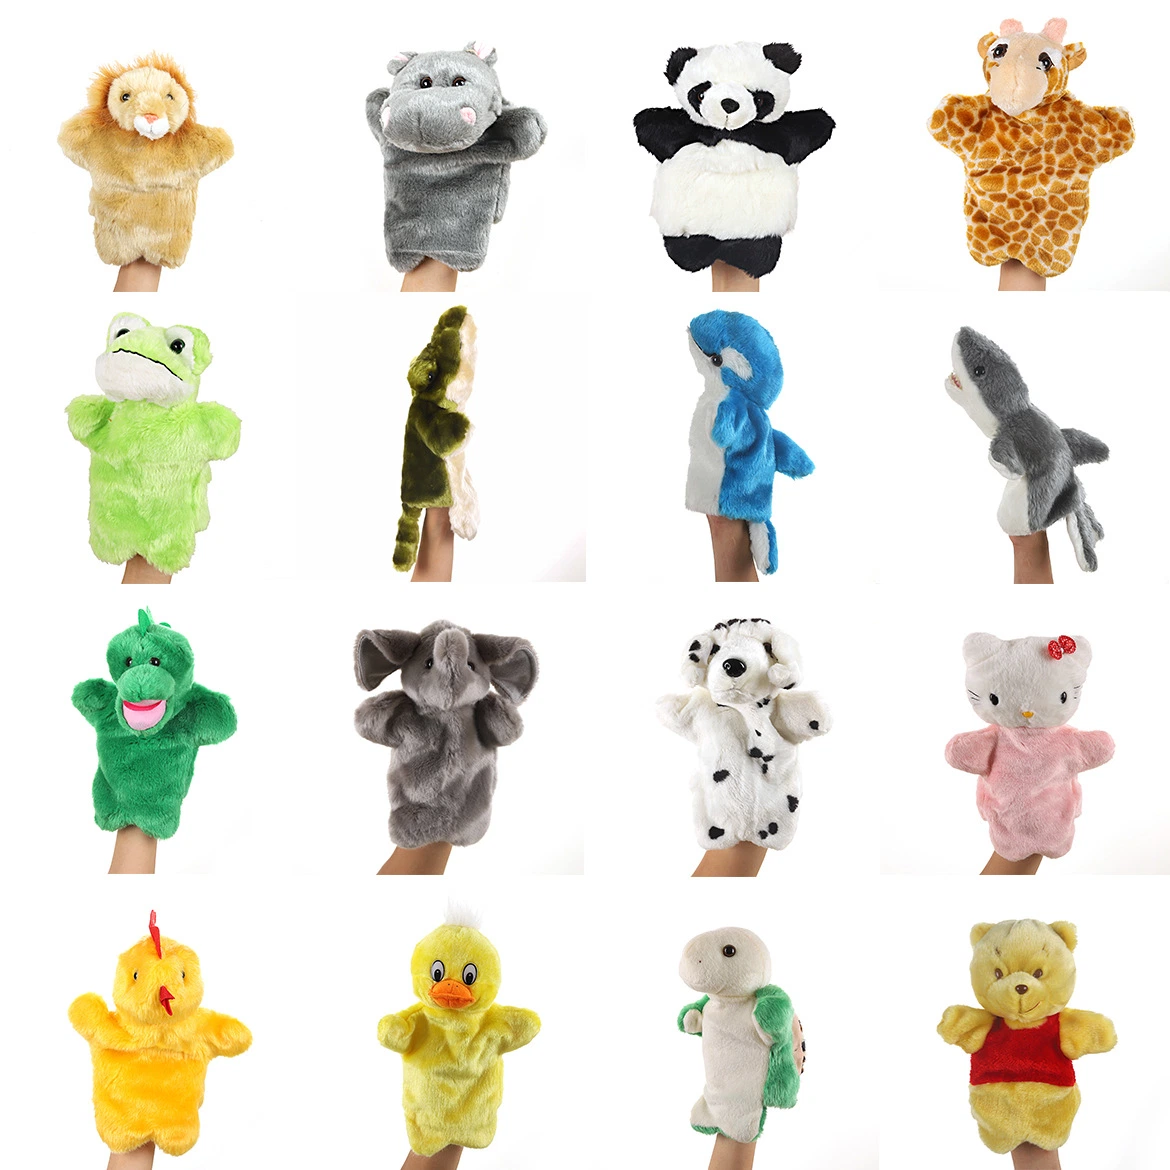 Wald gefüllte Tier Plüsch Spielzeug Hand Puppet Puppe für Kinder Spielzeug